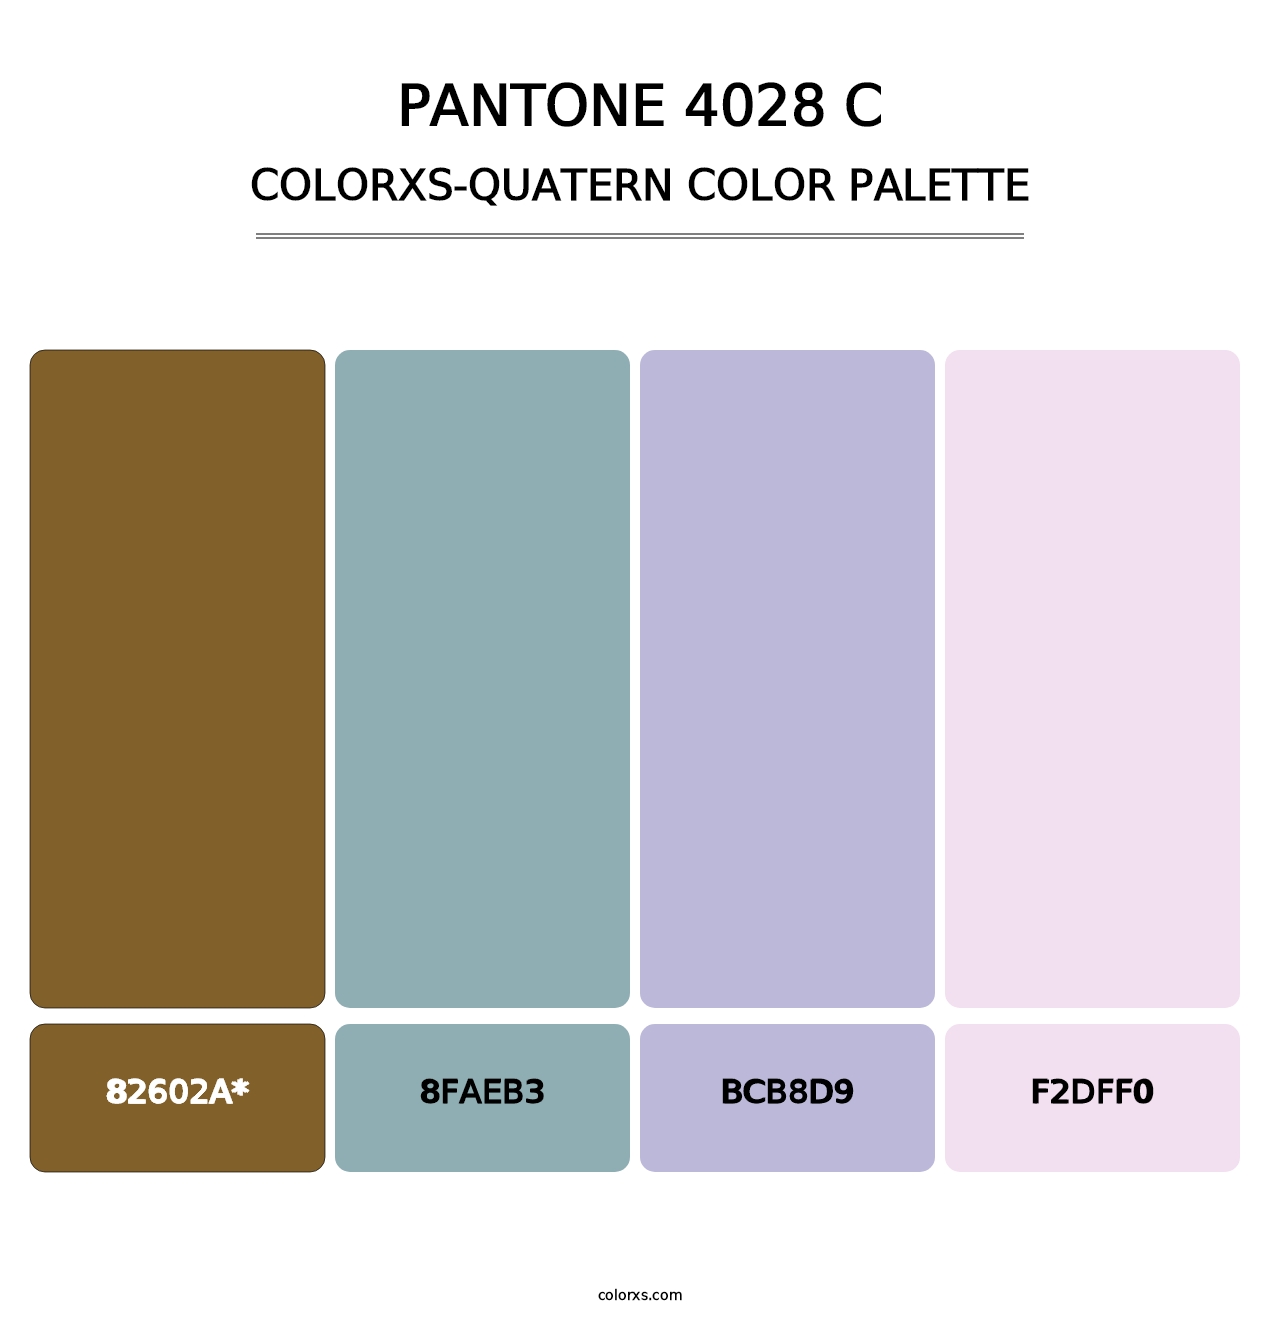 PANTONE 4028 C - Colorxs Quatern Palette